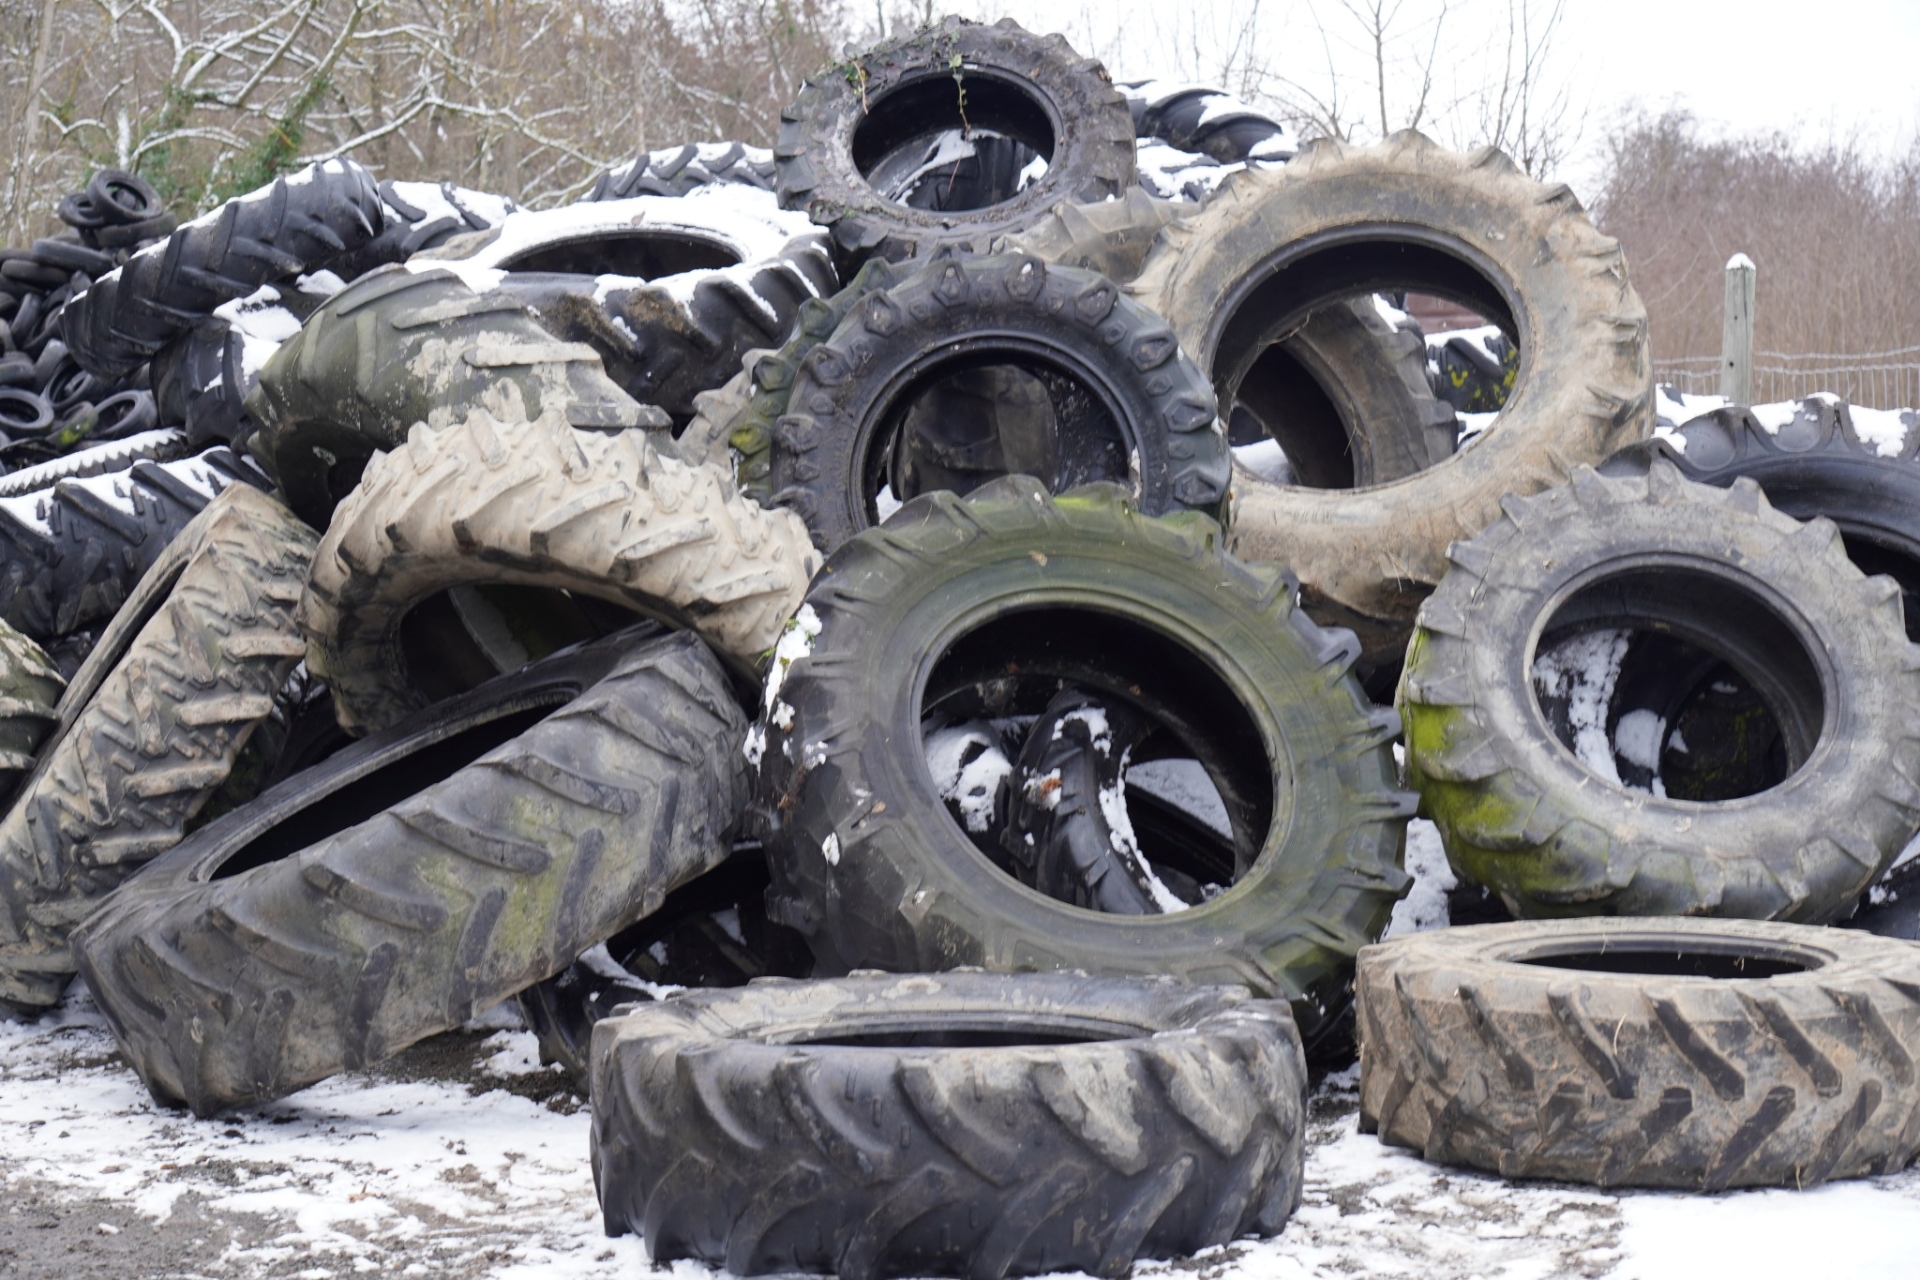 Recyclage de pneus usagés : une affaire qui roule